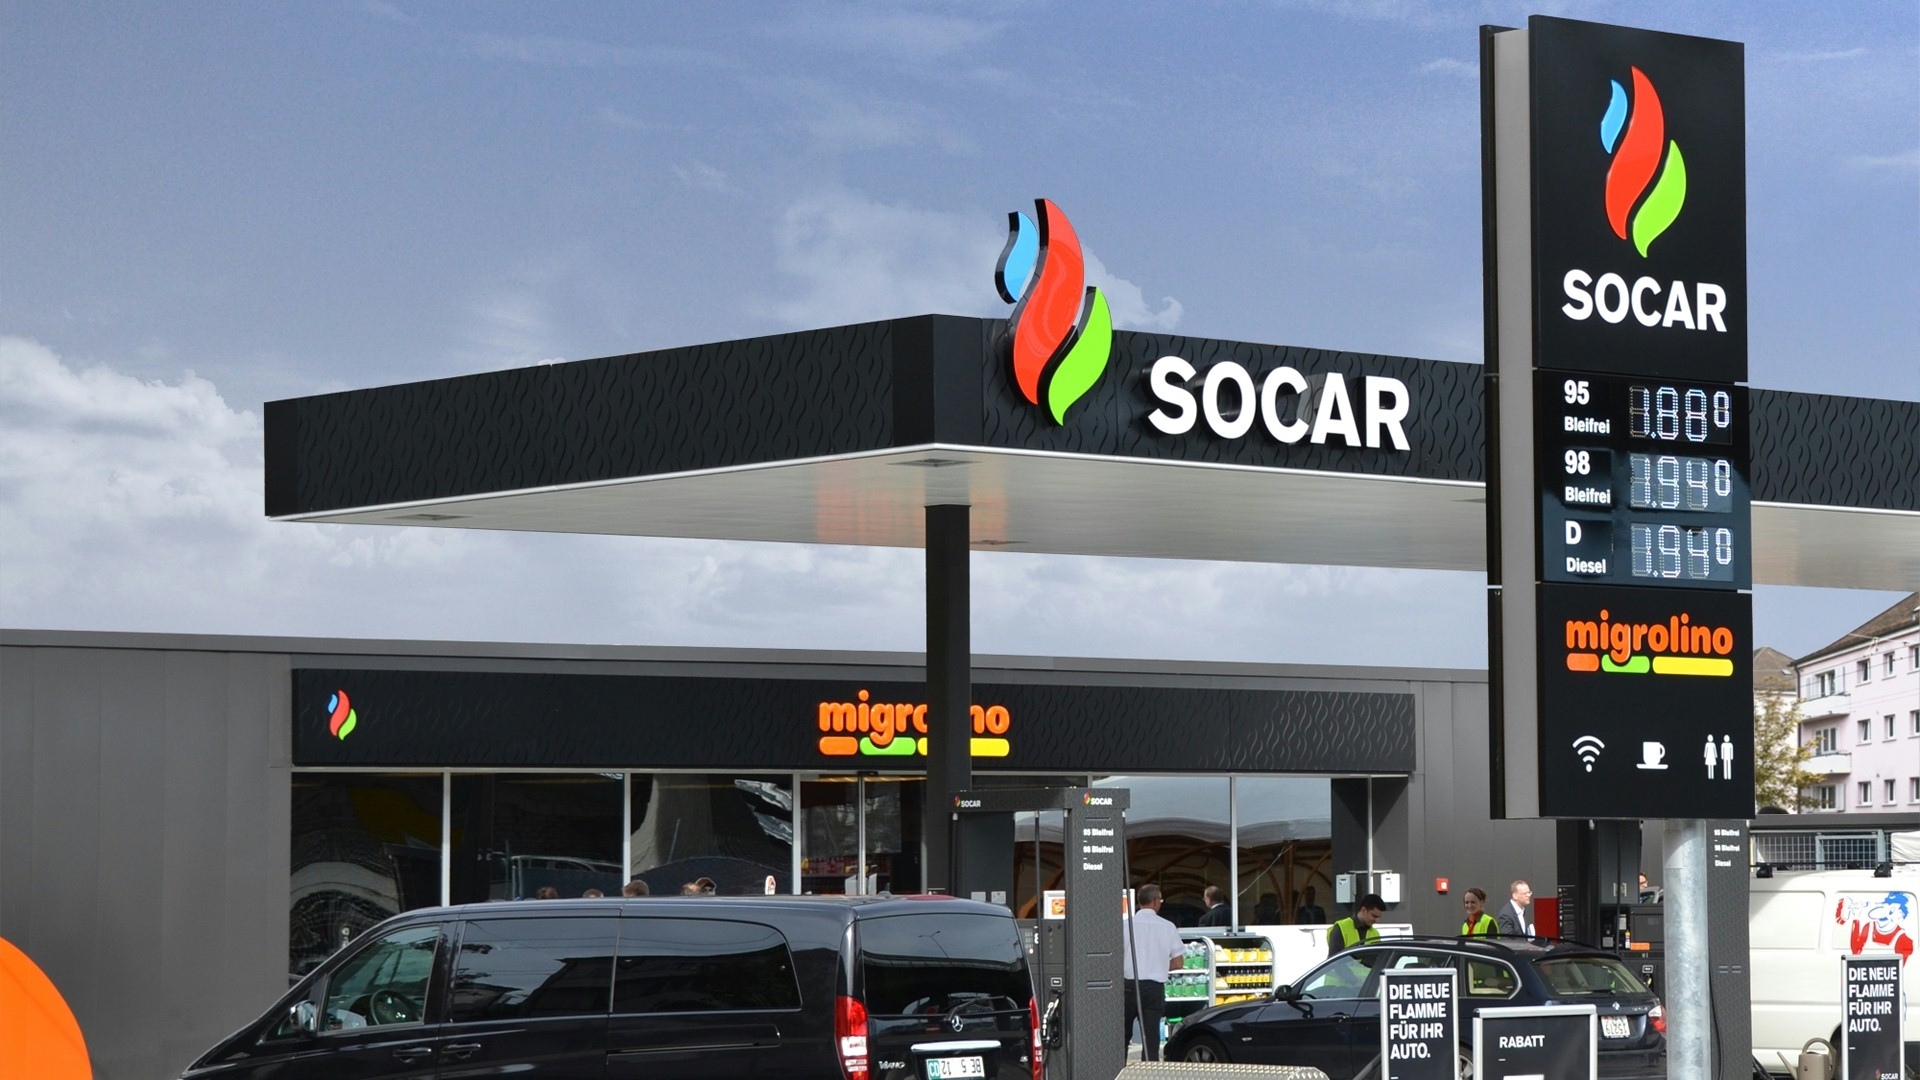 SOCAR Petroleum планирует открыть до 25 станций CNG в следующем году